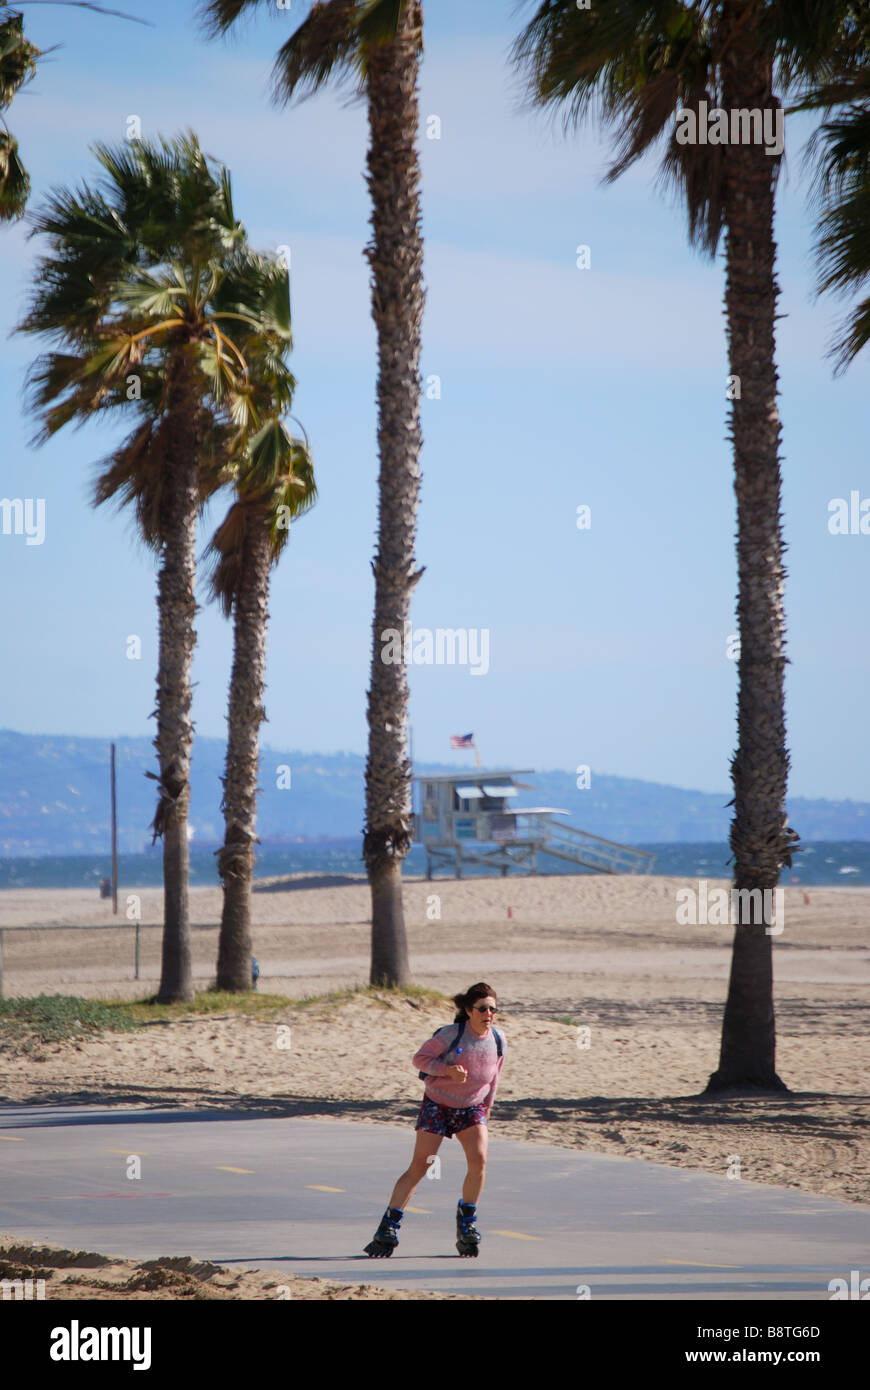 La plage de Santa Monica, Santa Monica, Los Angeles, Californie, États-Unis d'Amérique Banque D'Images